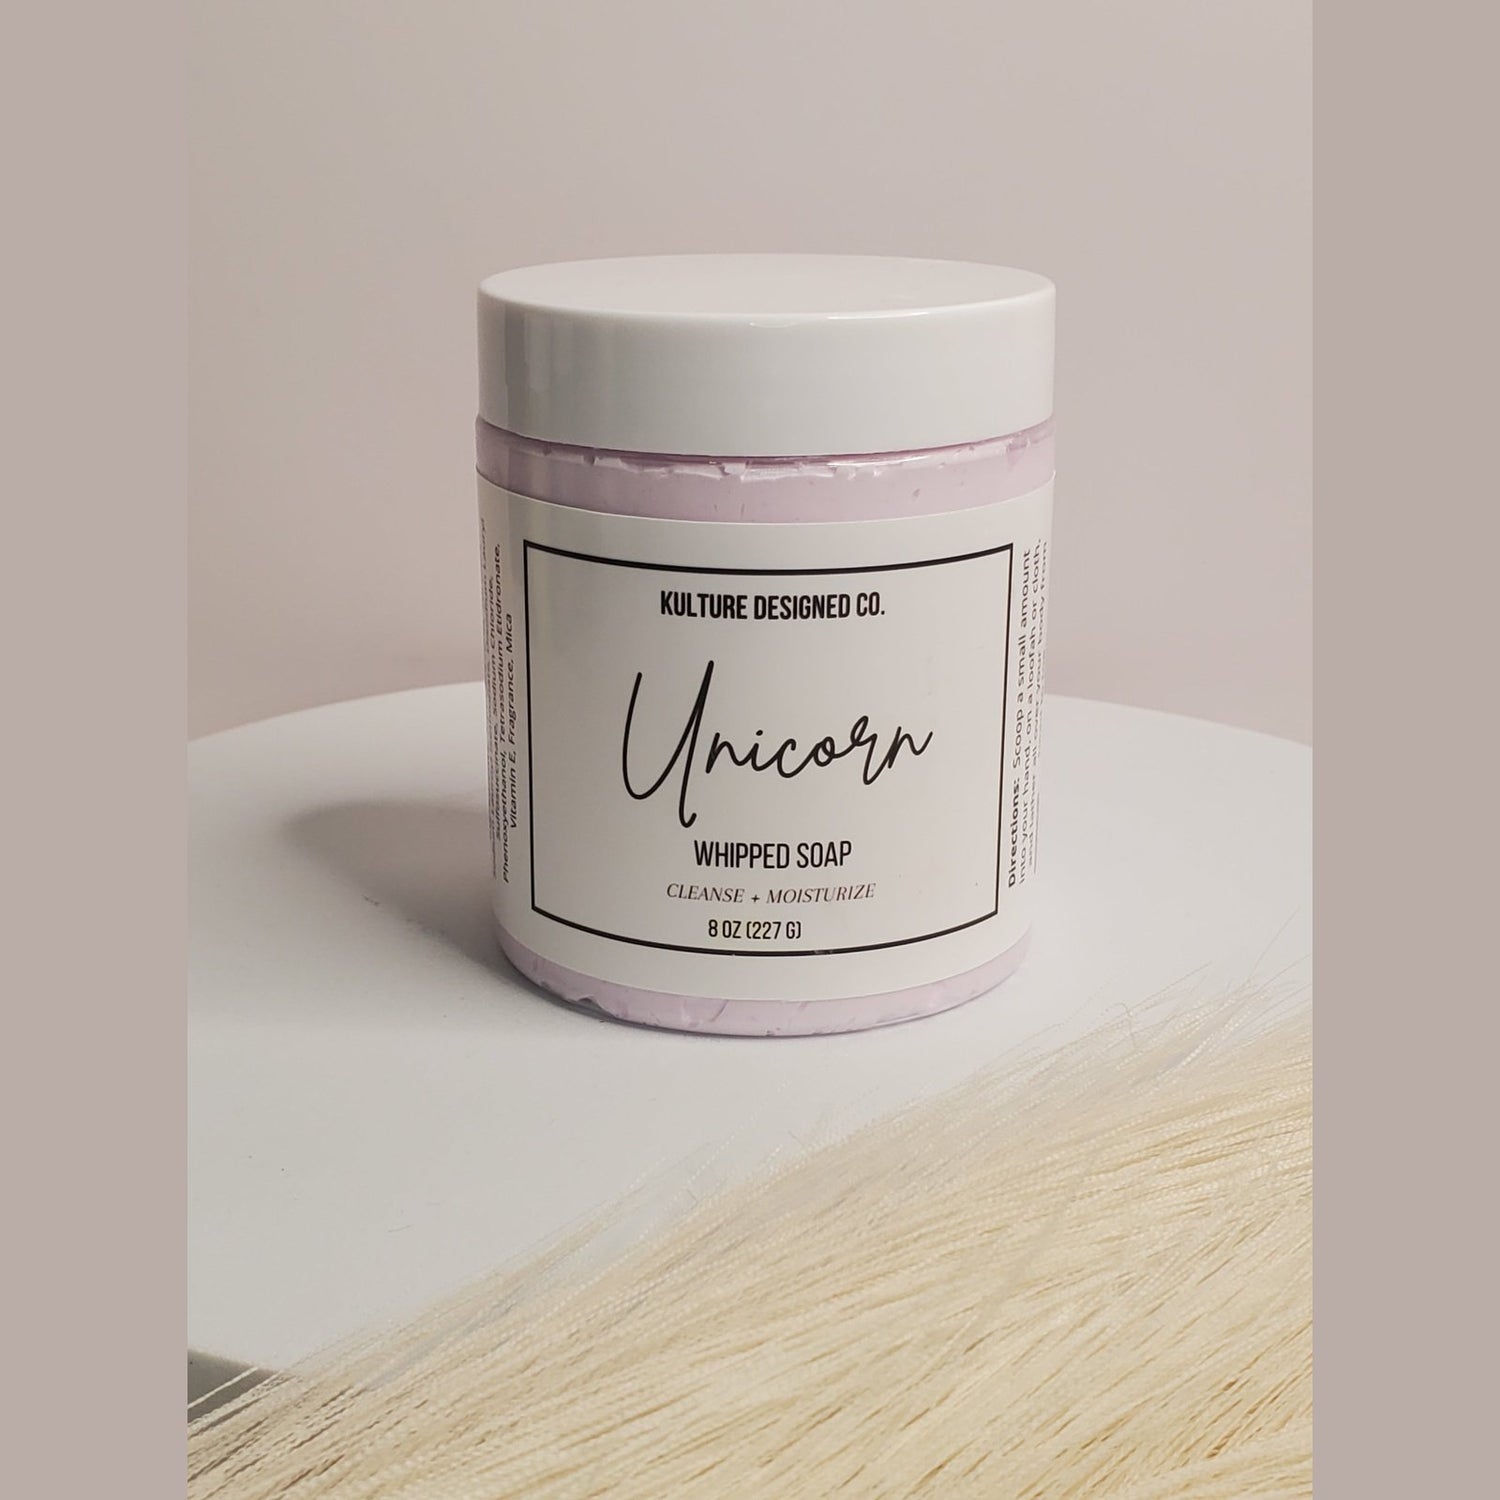 Unicorn | Whipped Soap - Kulture Designed Co.